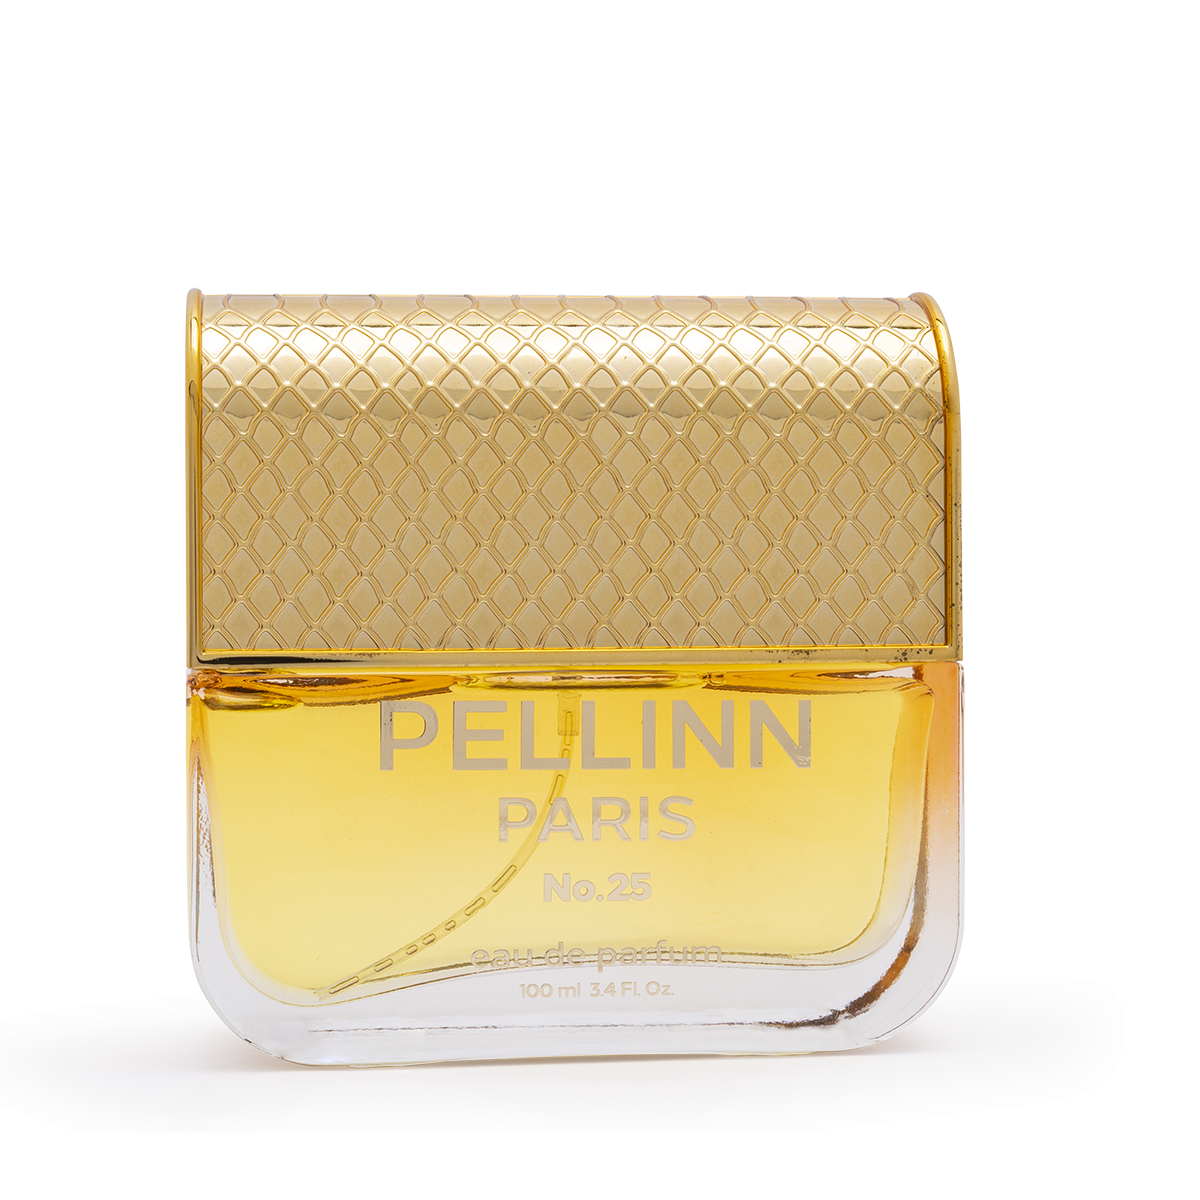 Pellinn Paris No.25 Oryantal ve Odunsu Kadın EDP Parfüm100 ml  Pellinn Paris Parfüm